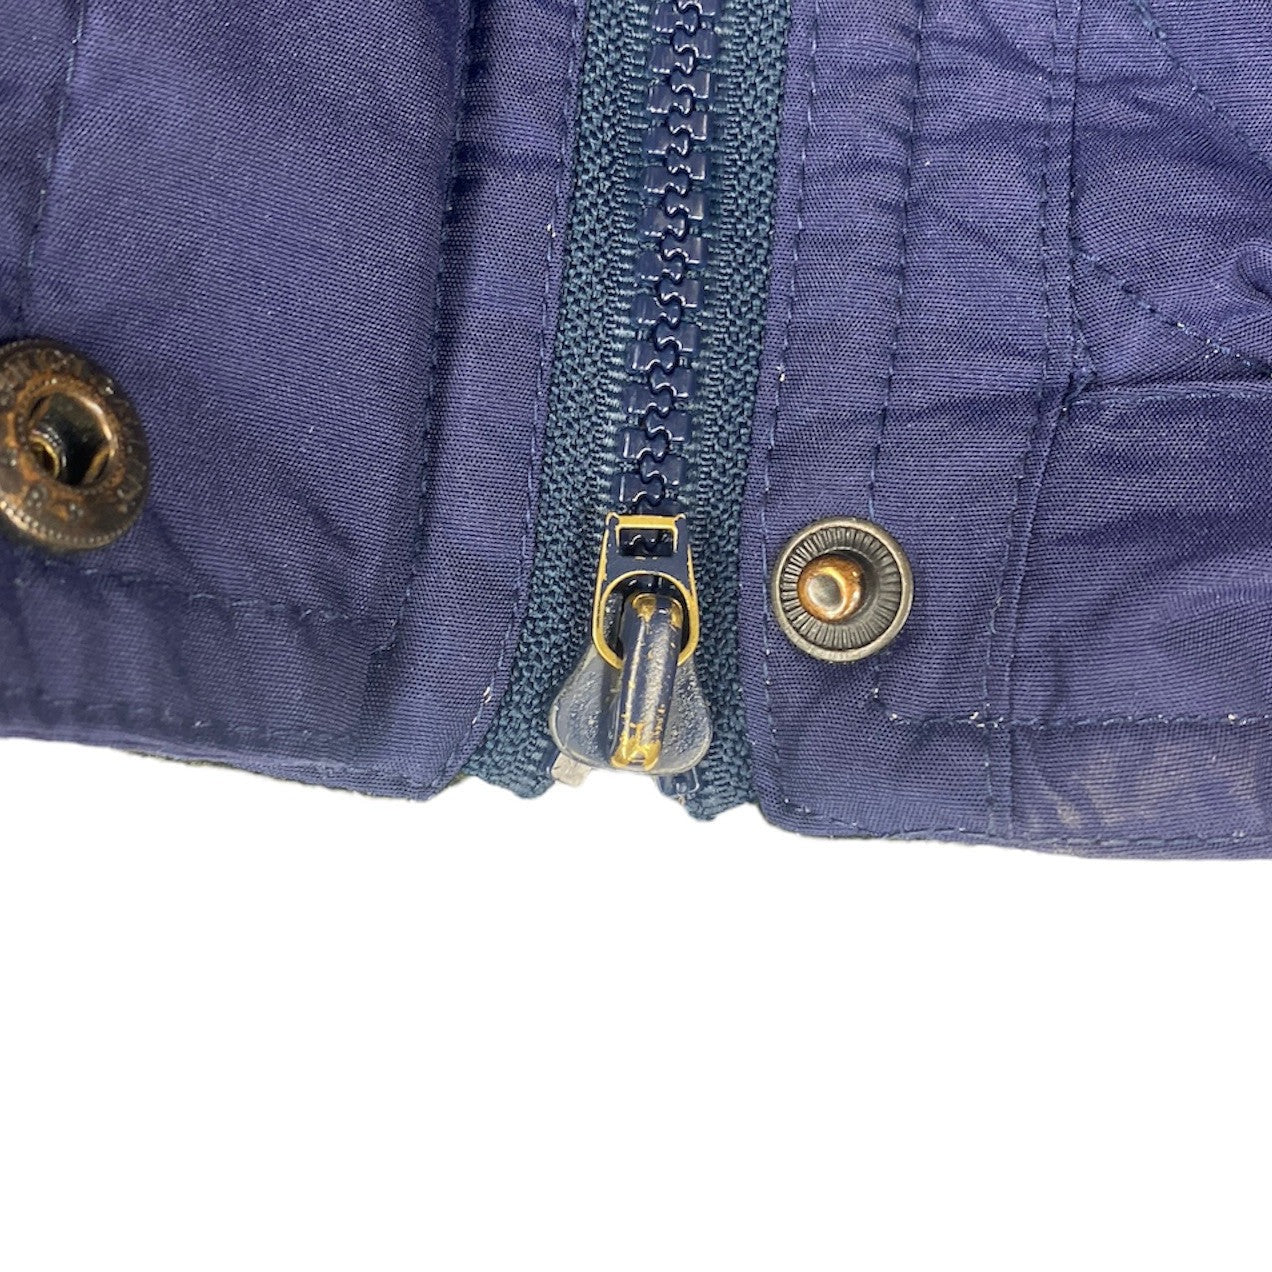 Timberland Weathergear Padded Hooded Jacket